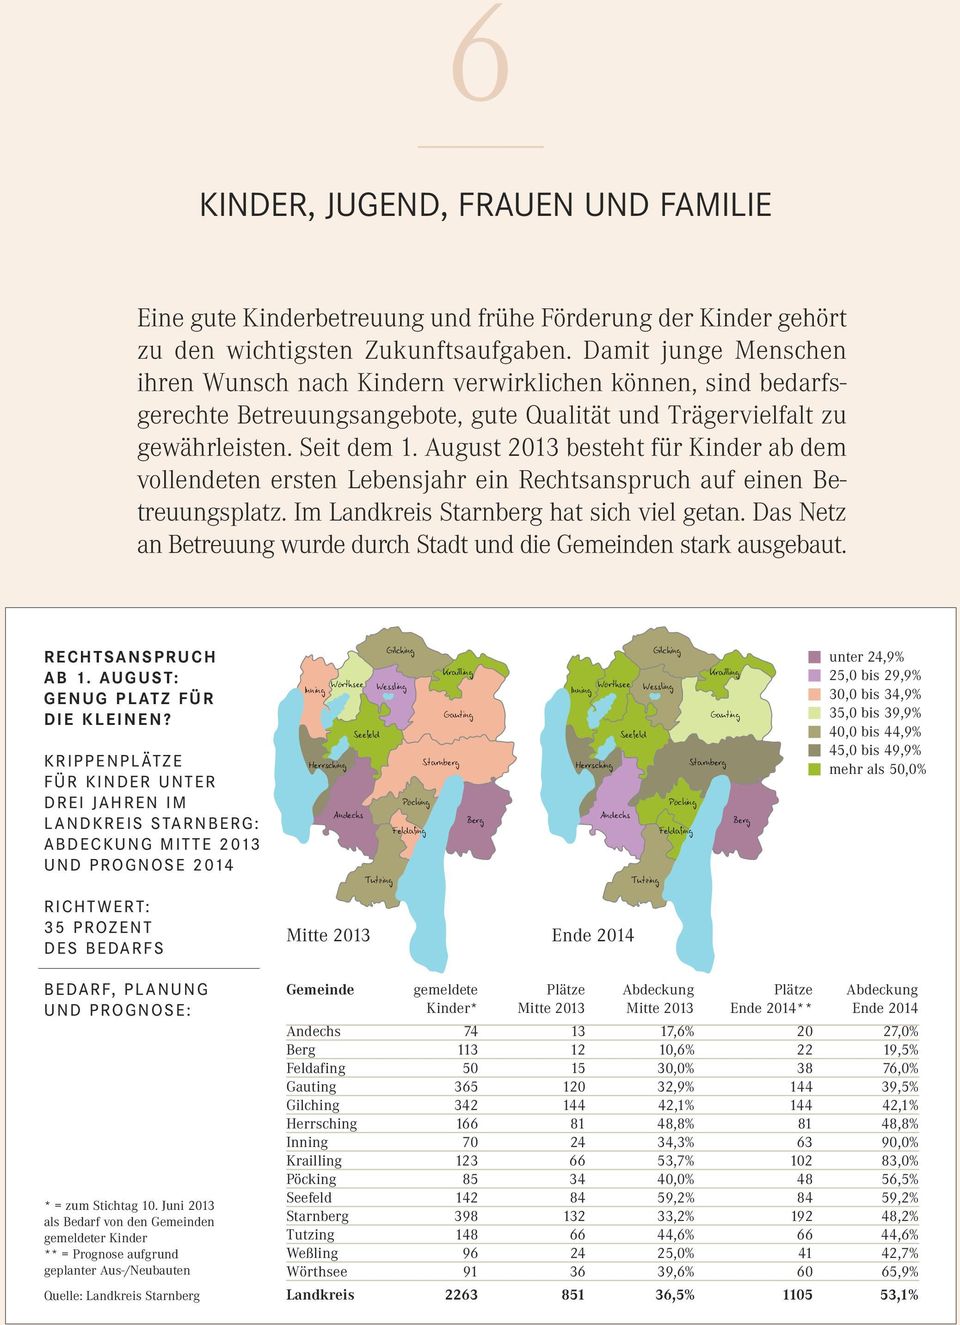 August 2013 besteht für Kinder ab dem vollendeten ersten Lebensjahr ein Rechtsanspruch auf einen Betreuungsplatz. Im Landkreis Starnberg hat sich viel getan.